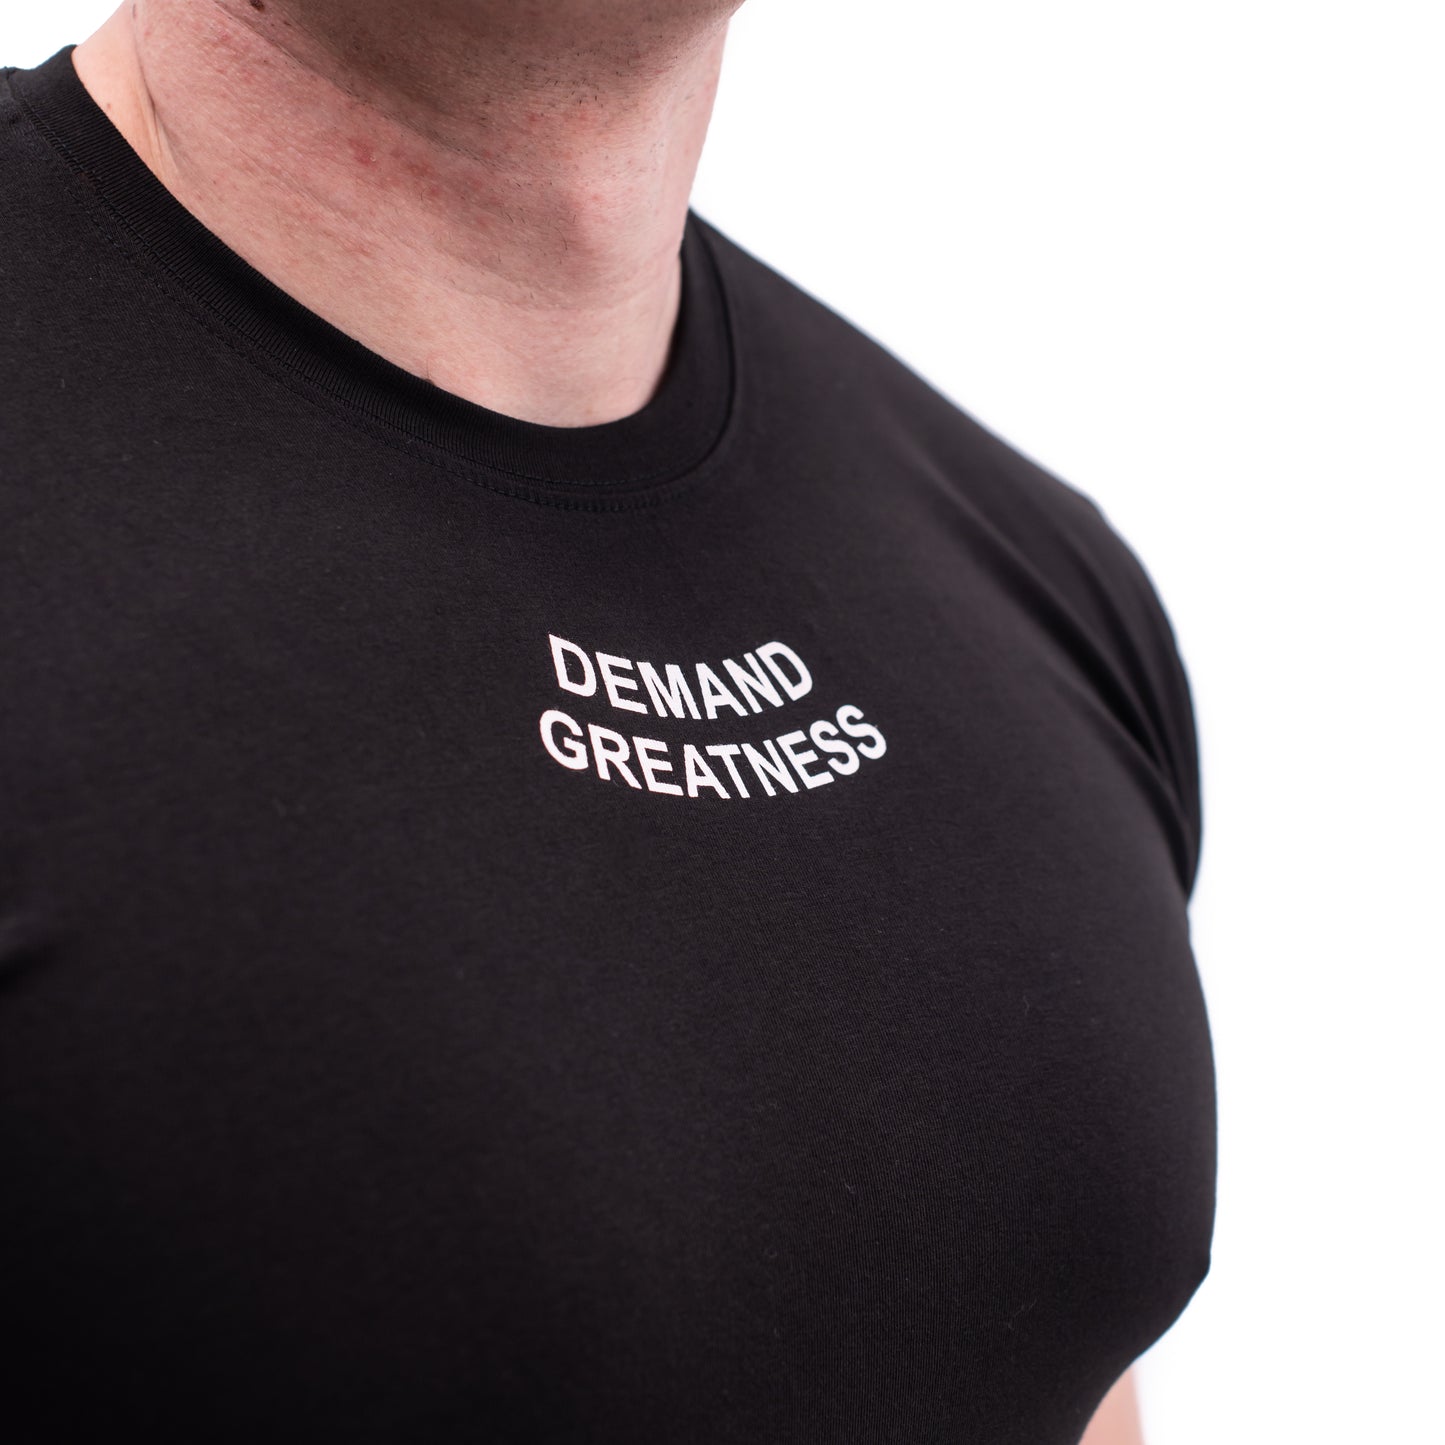 
                  
                    Demand Greatness IPF Approved Logo Men's Meet Shirt - Black
                  
                